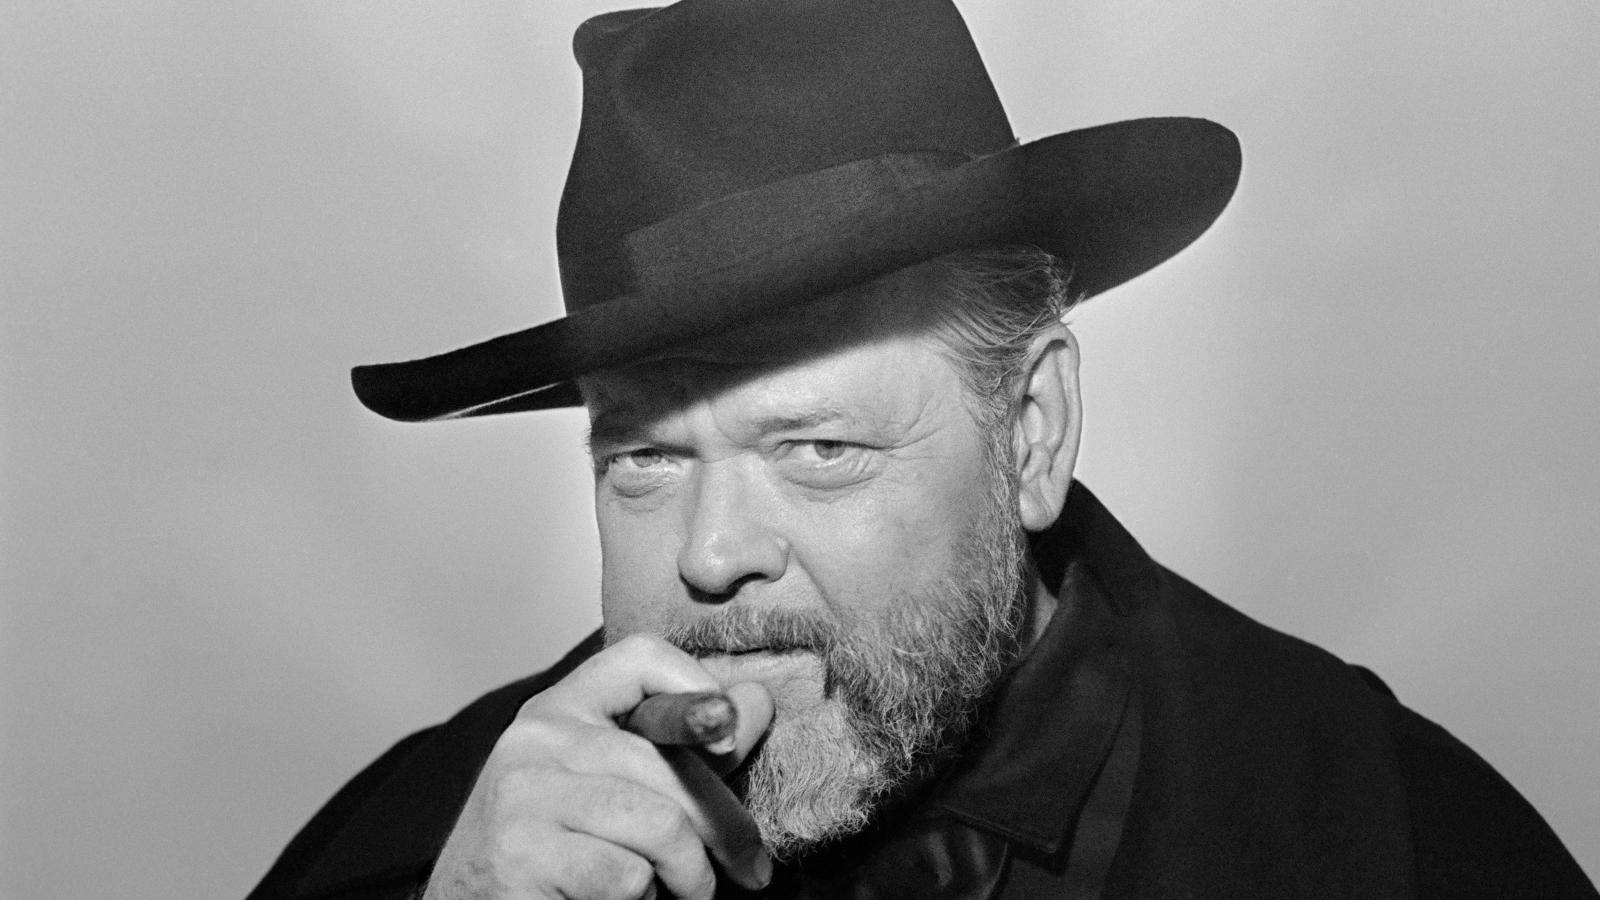 Kult-skuespiller-filmproducer Orson Welles pryder dette fremtrædende tapet. Wallpaper